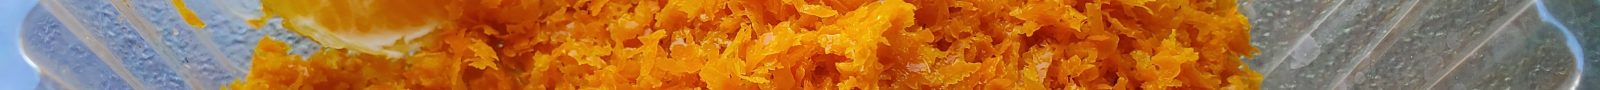 Orange zest for Orange County Common